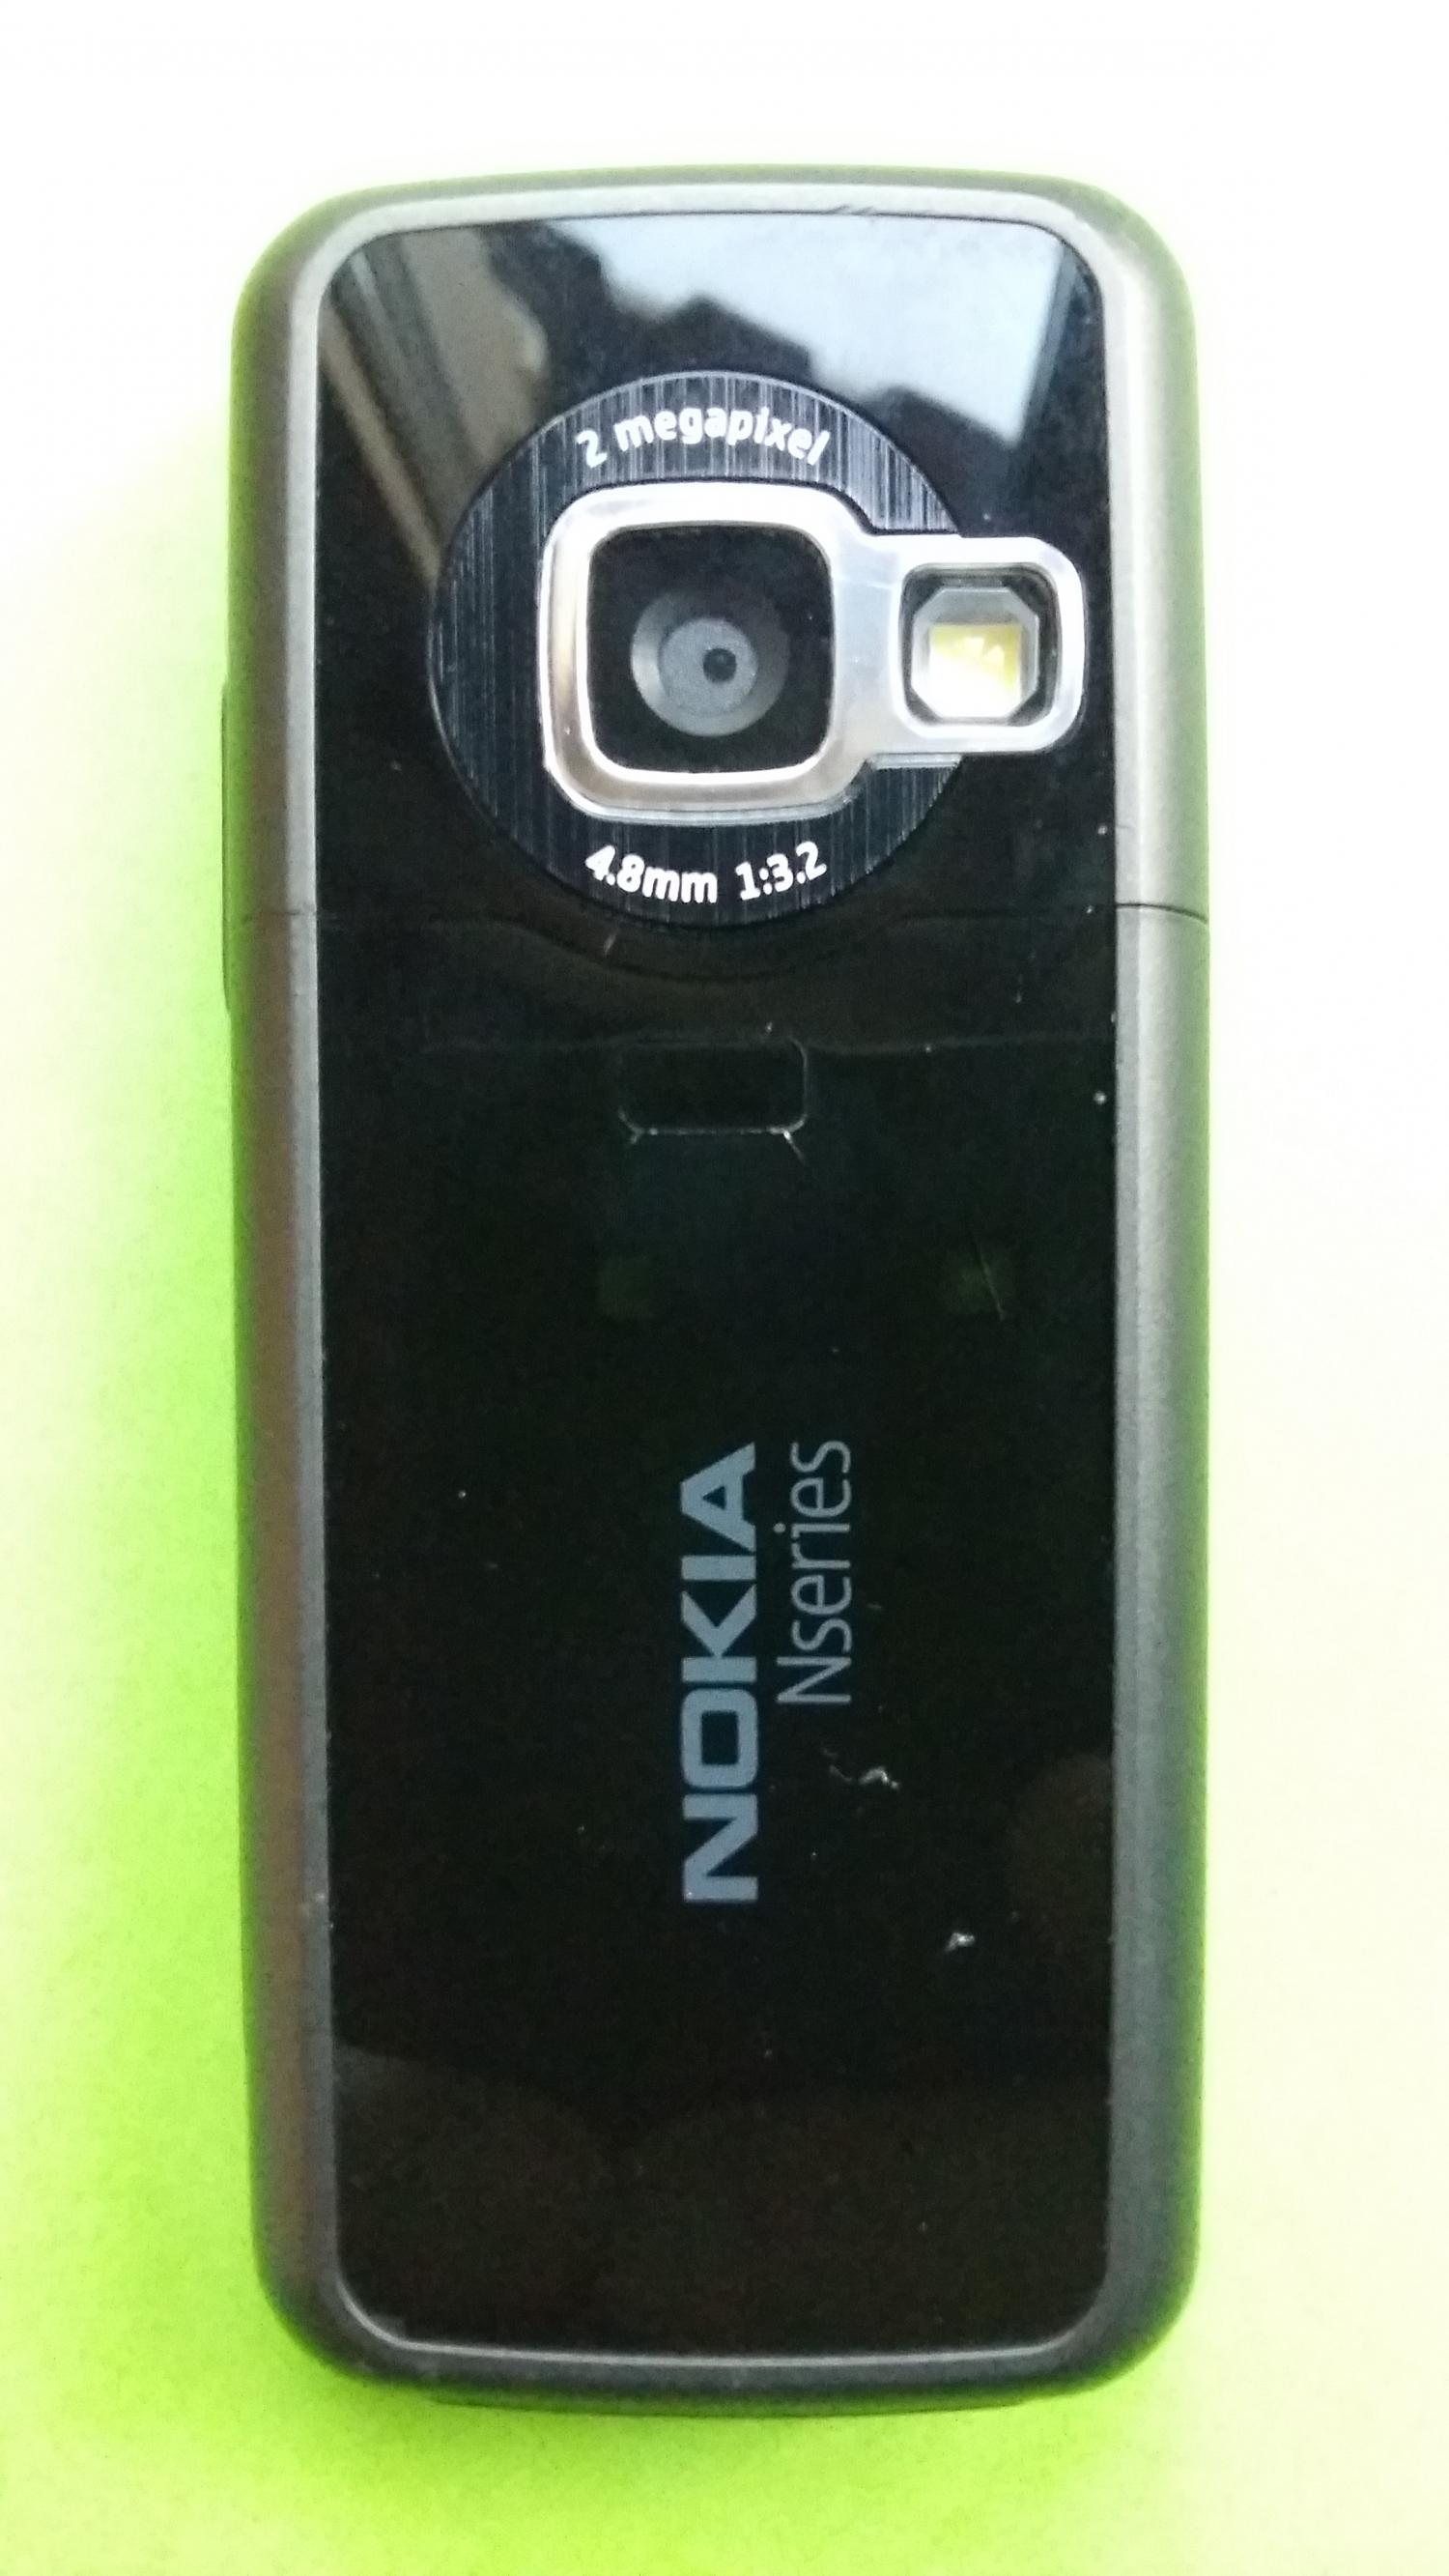 image-7307820-Nokia N77-1 (1)2.jpg